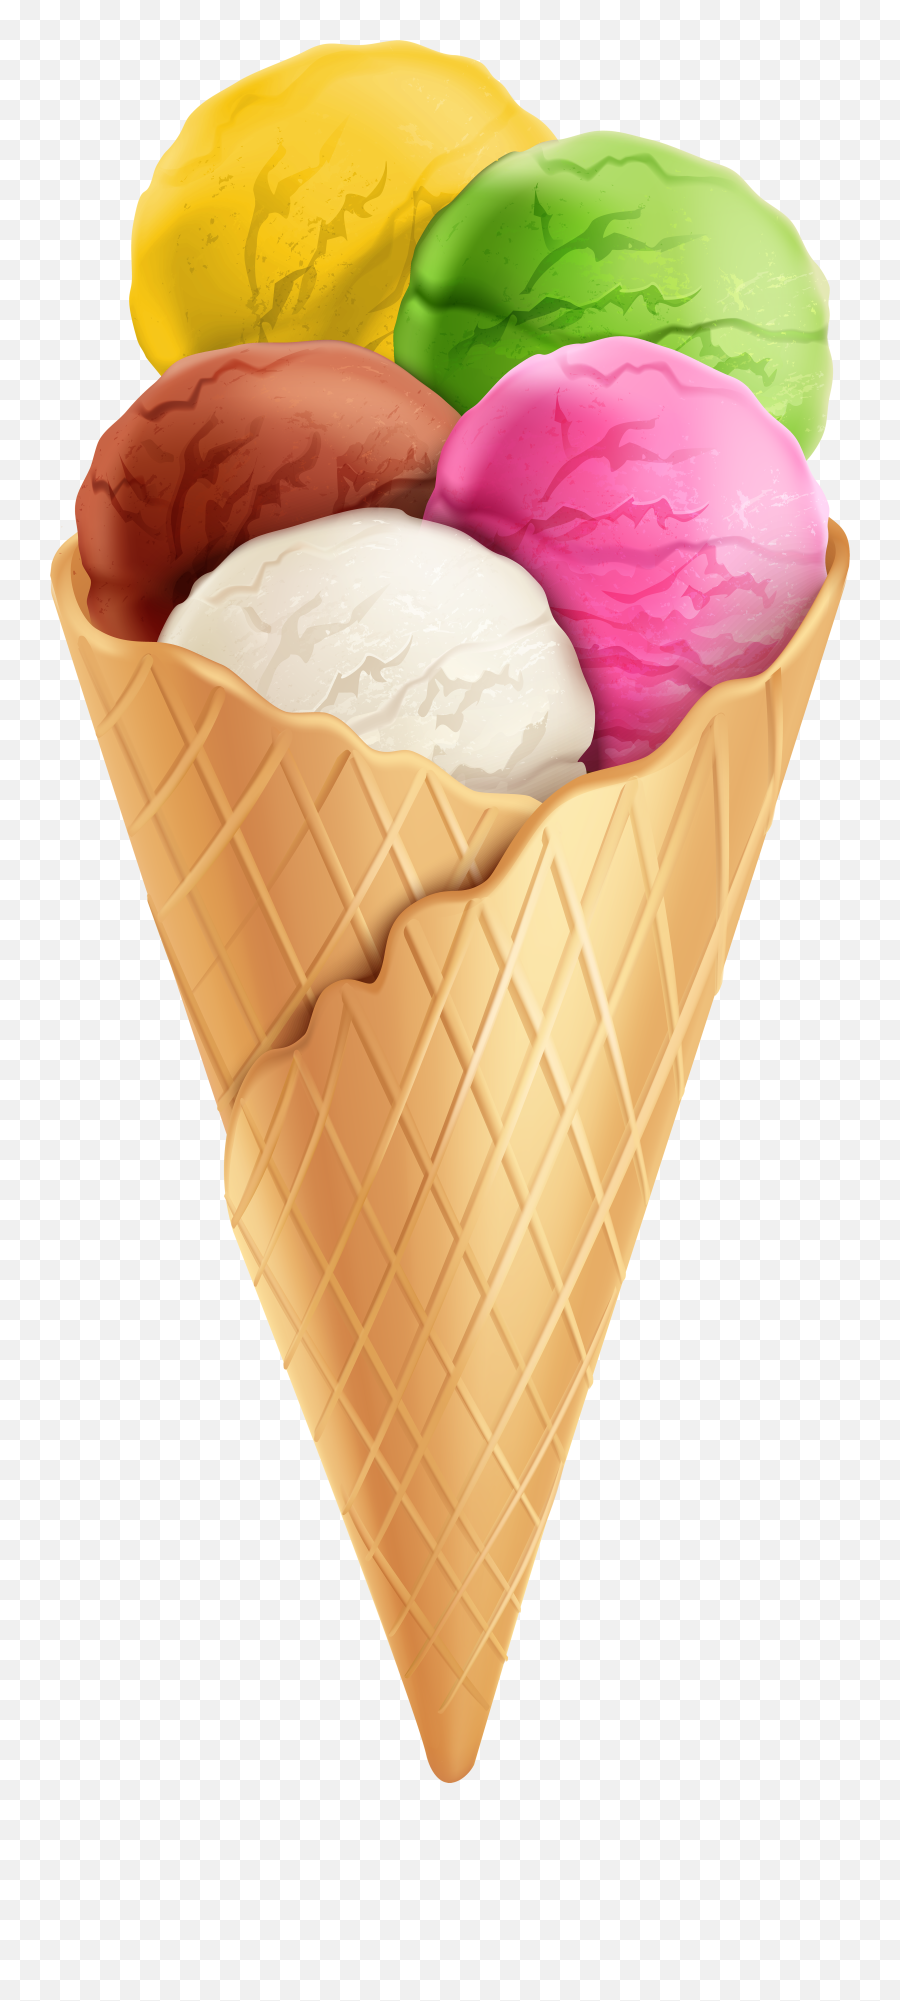 Ice Cream Cone Chocolate - Ice Cream Transparent Background Png,Ice Cream Transparent